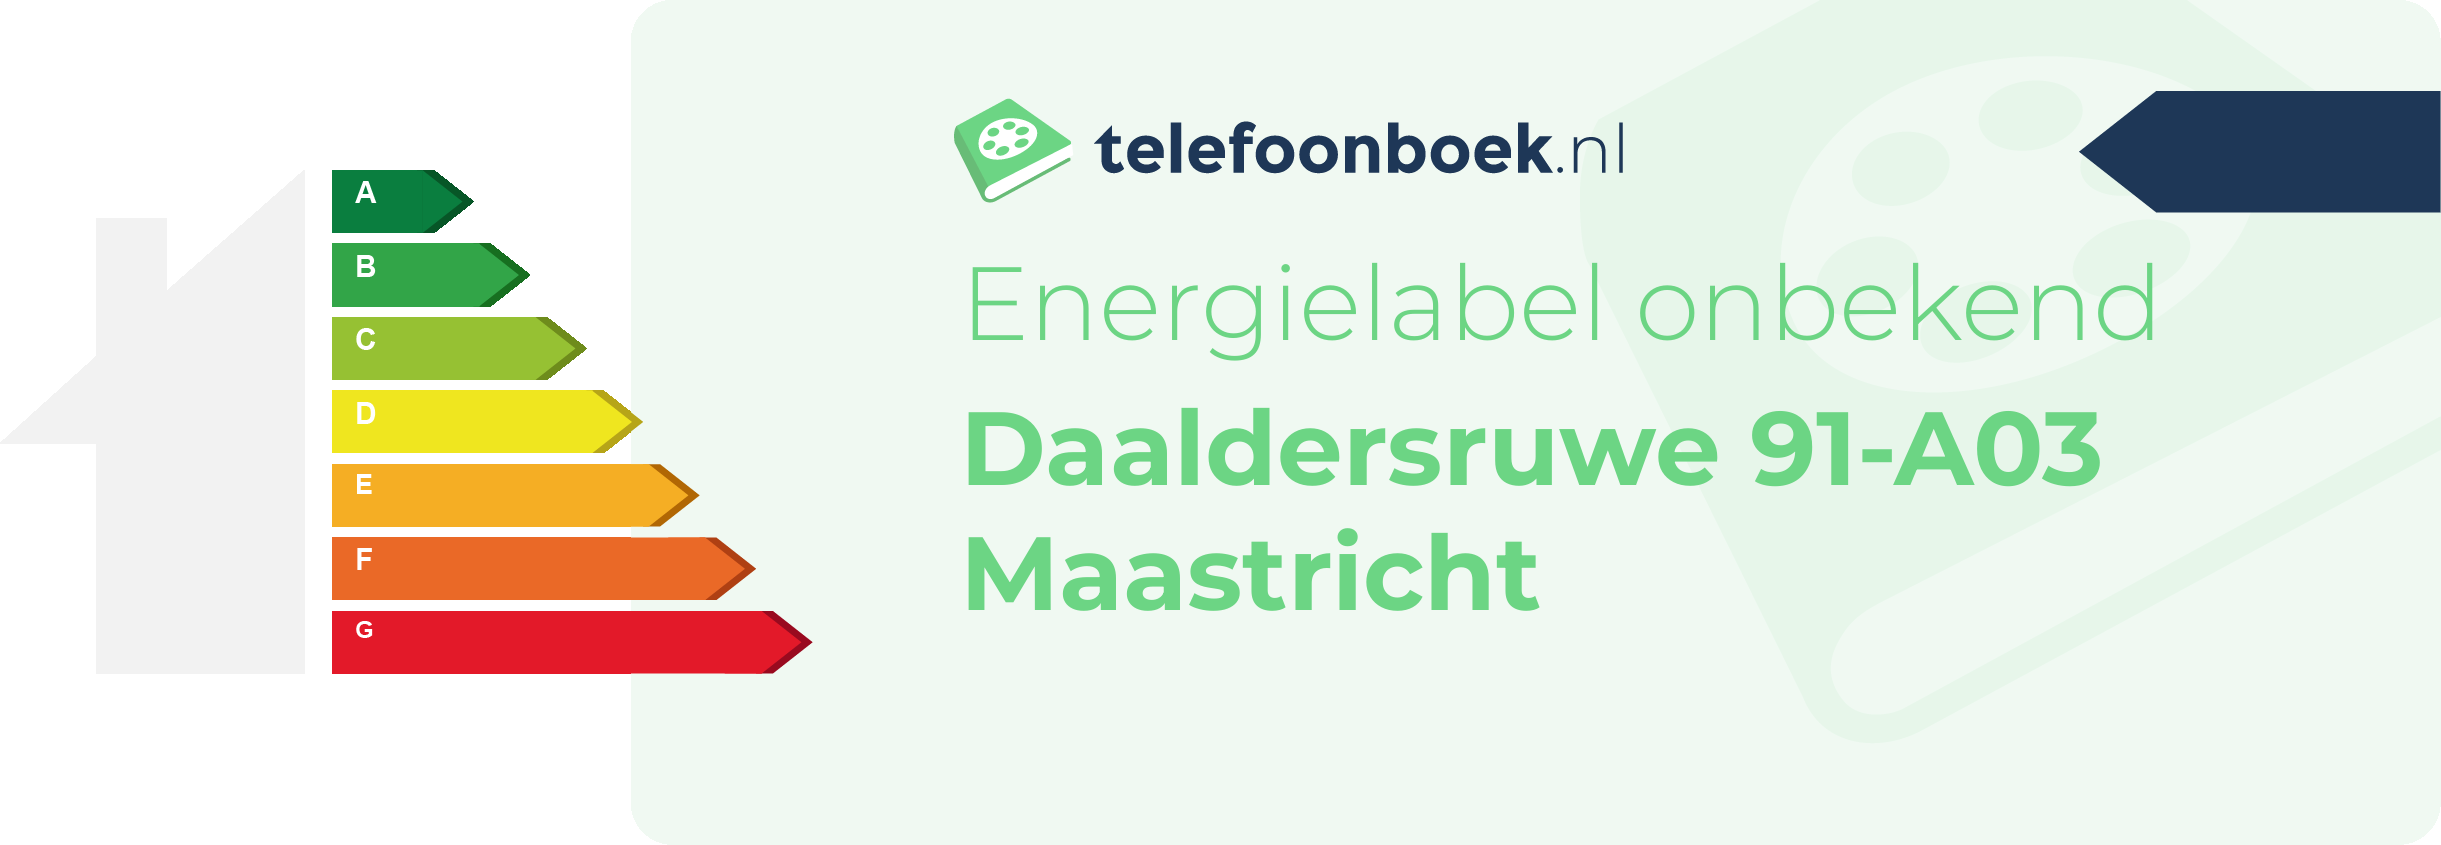 Energielabel Daaldersruwe 91-A03 Maastricht